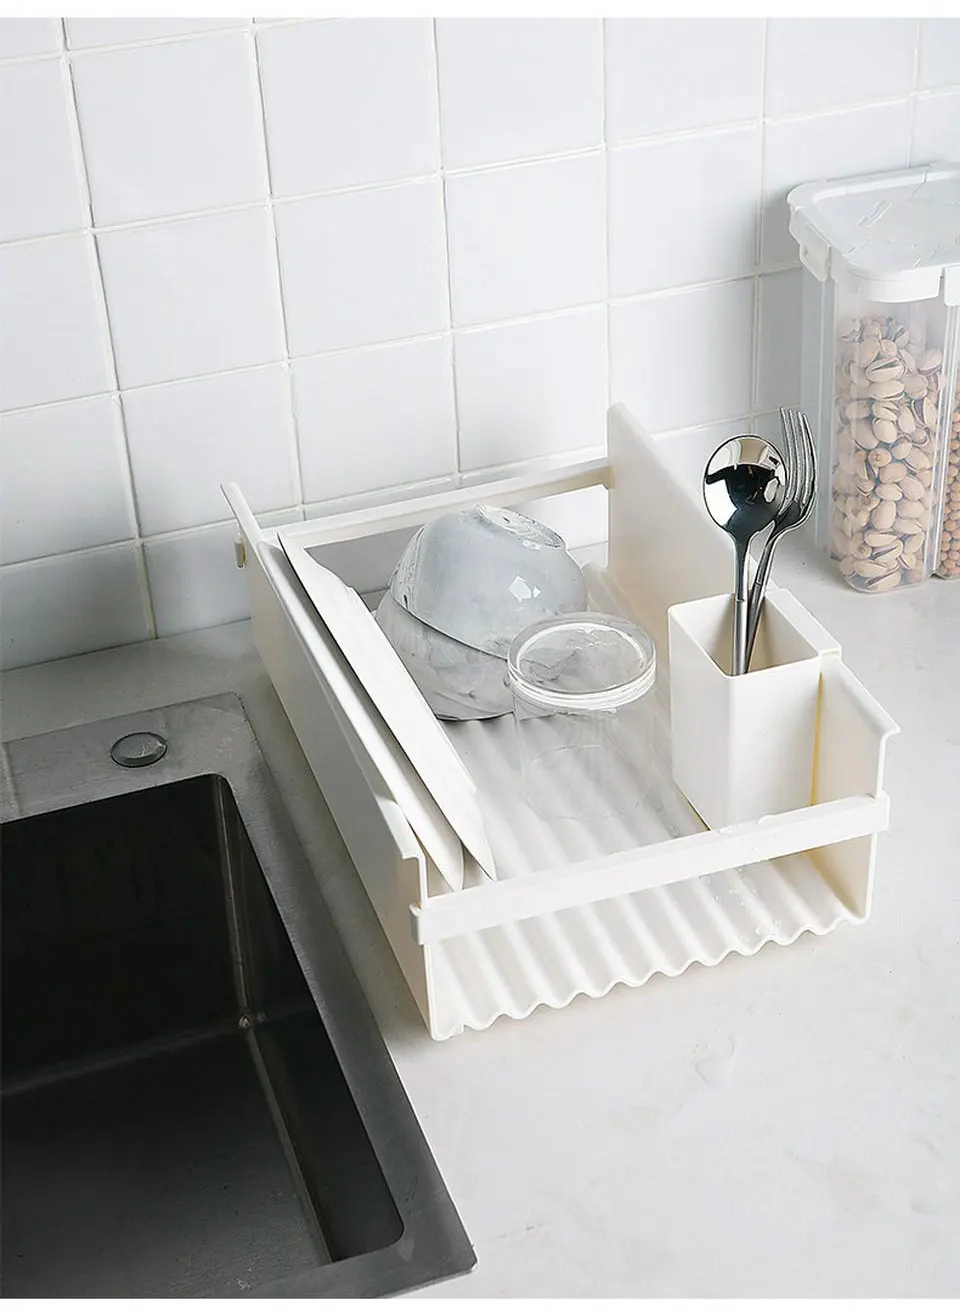 Кухонная раковина сливная стойка пластиковая тарелка лоток-сушилка губка ткань мыло коробка для хранения держатель сушилка над раковиной столешница Органайзер